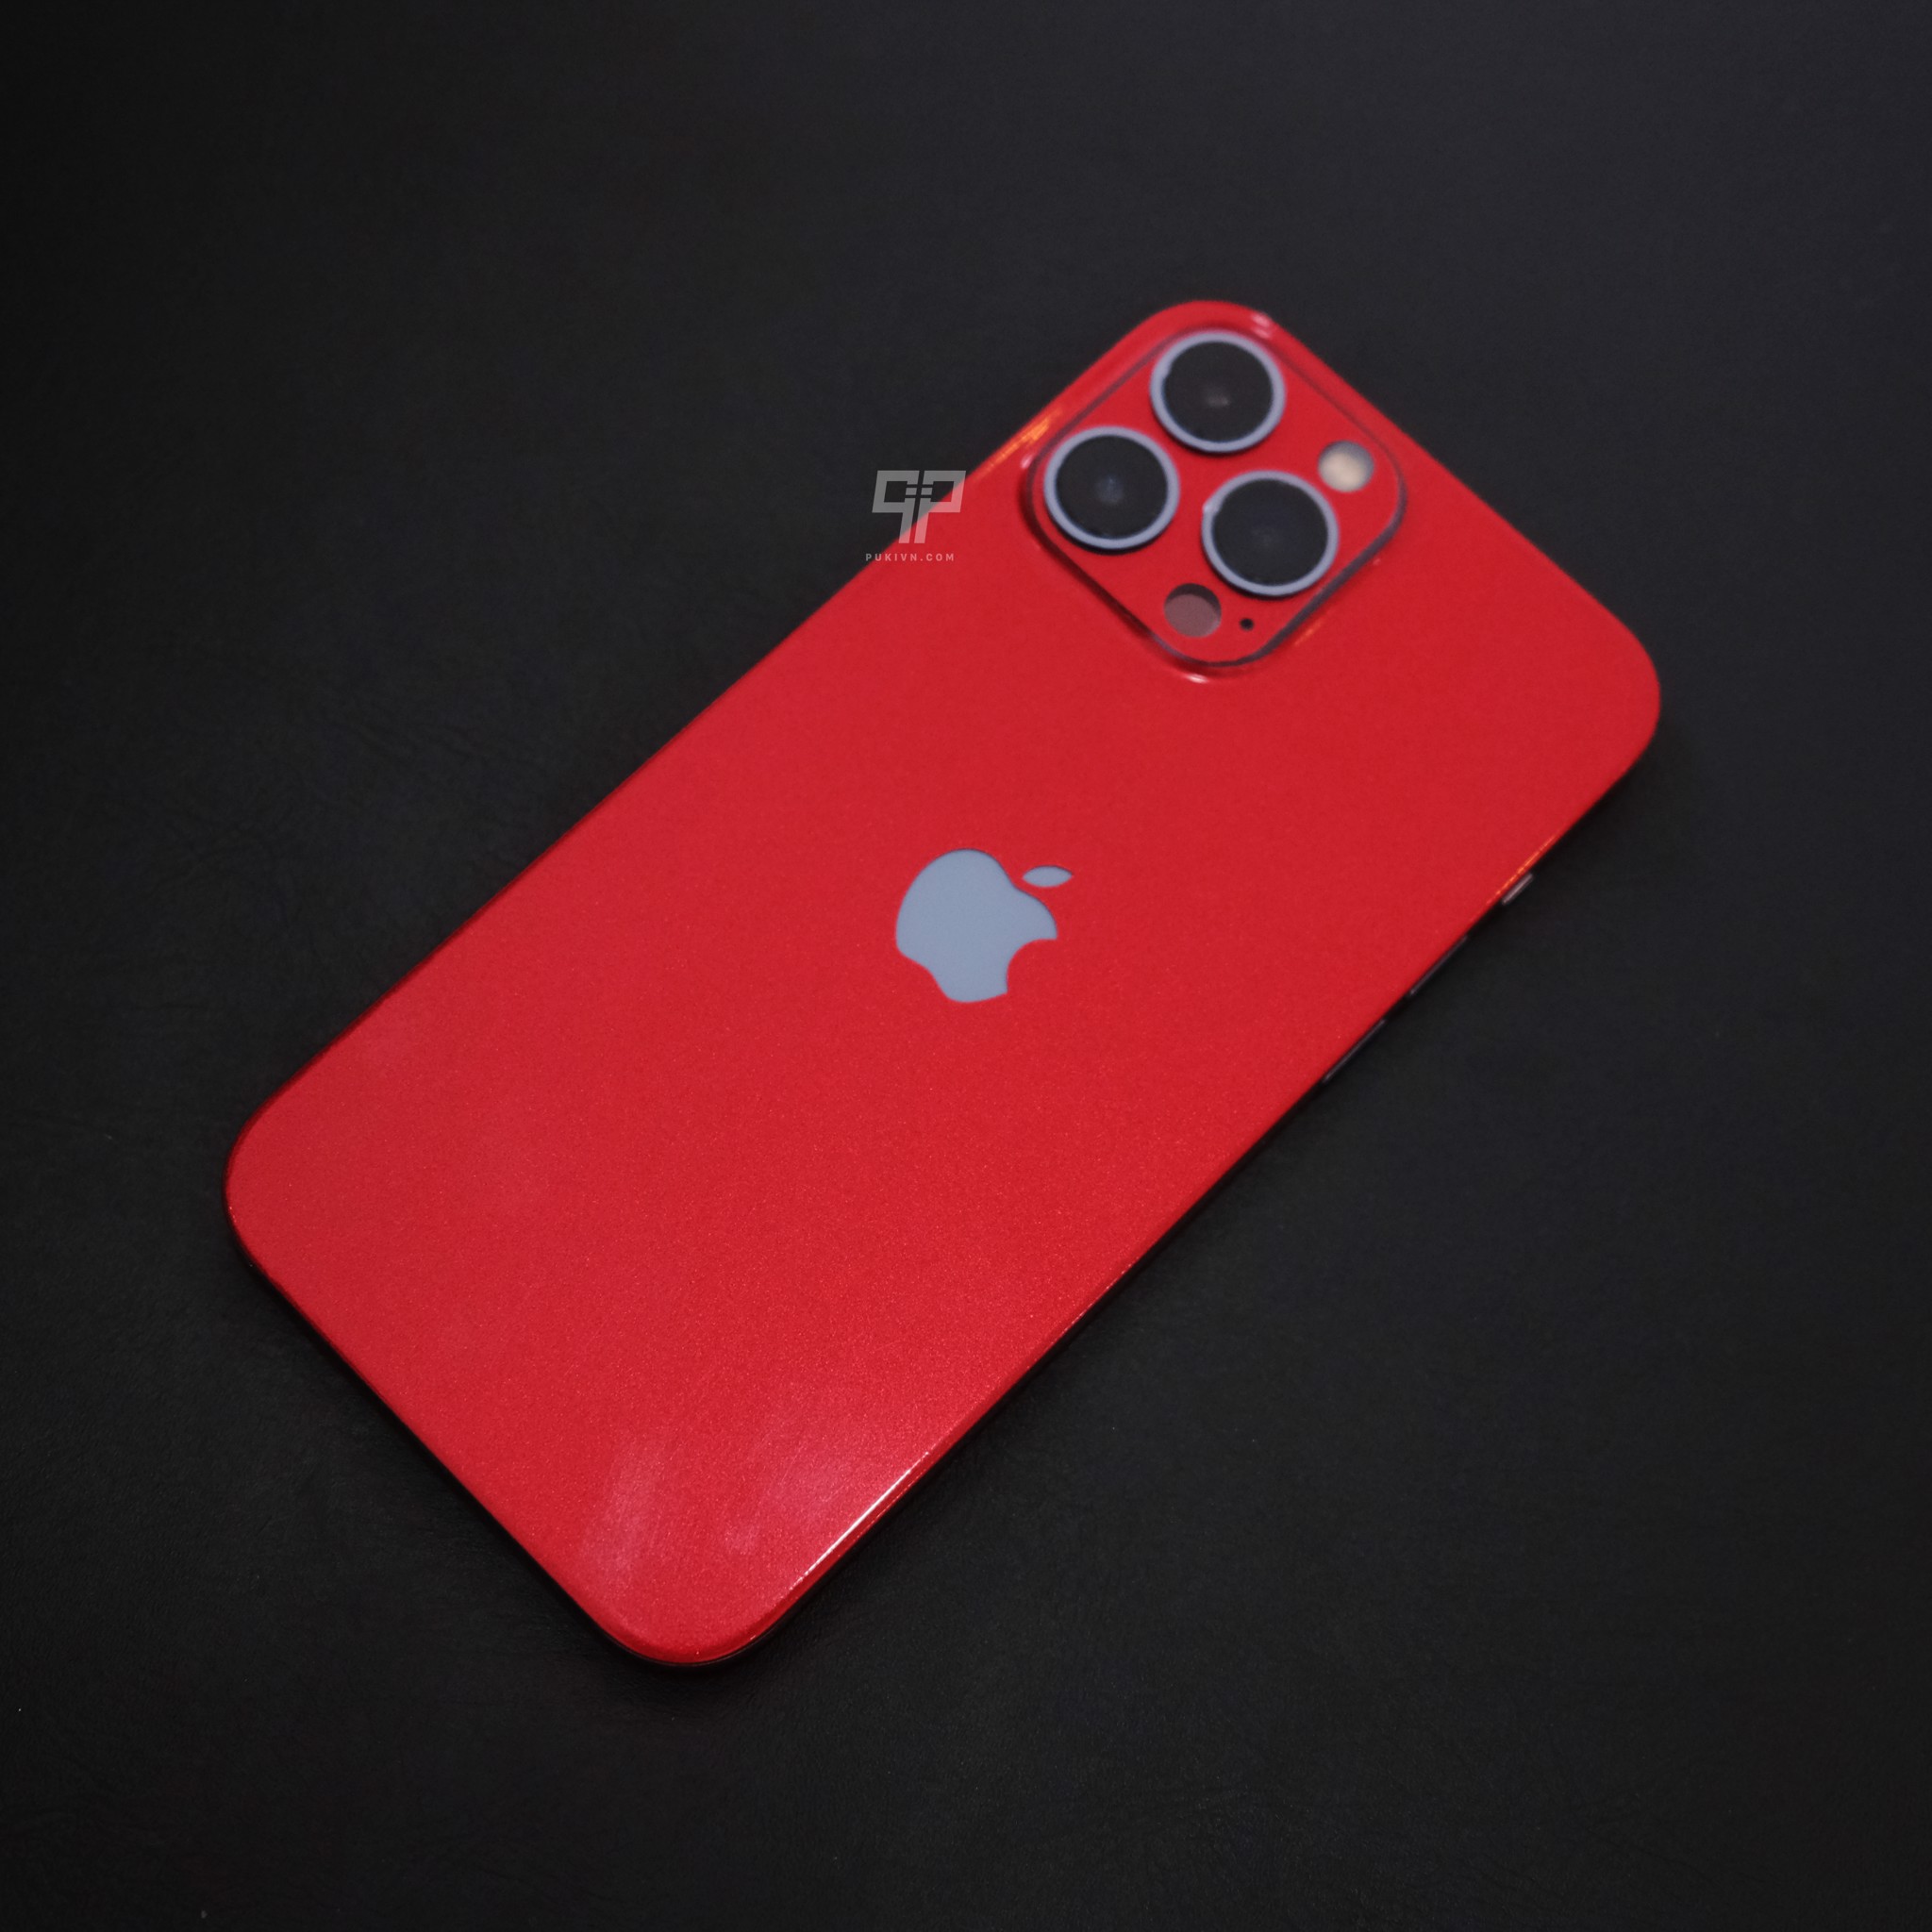 Skin iPhone màu đỏ may mắn mùa hè 2022